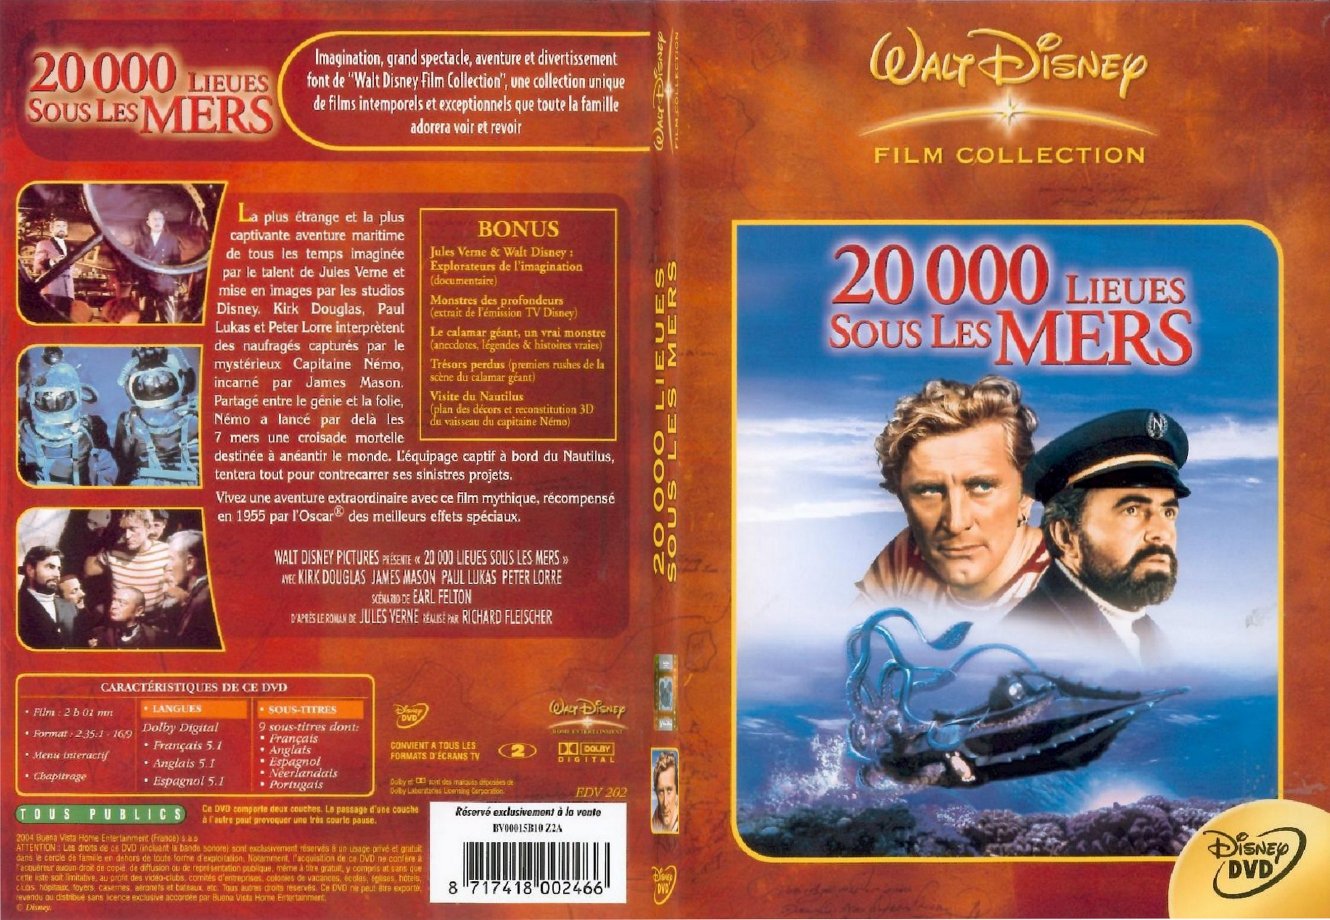 Jaquette DVD 20000 lieux sous les mers - SLIM